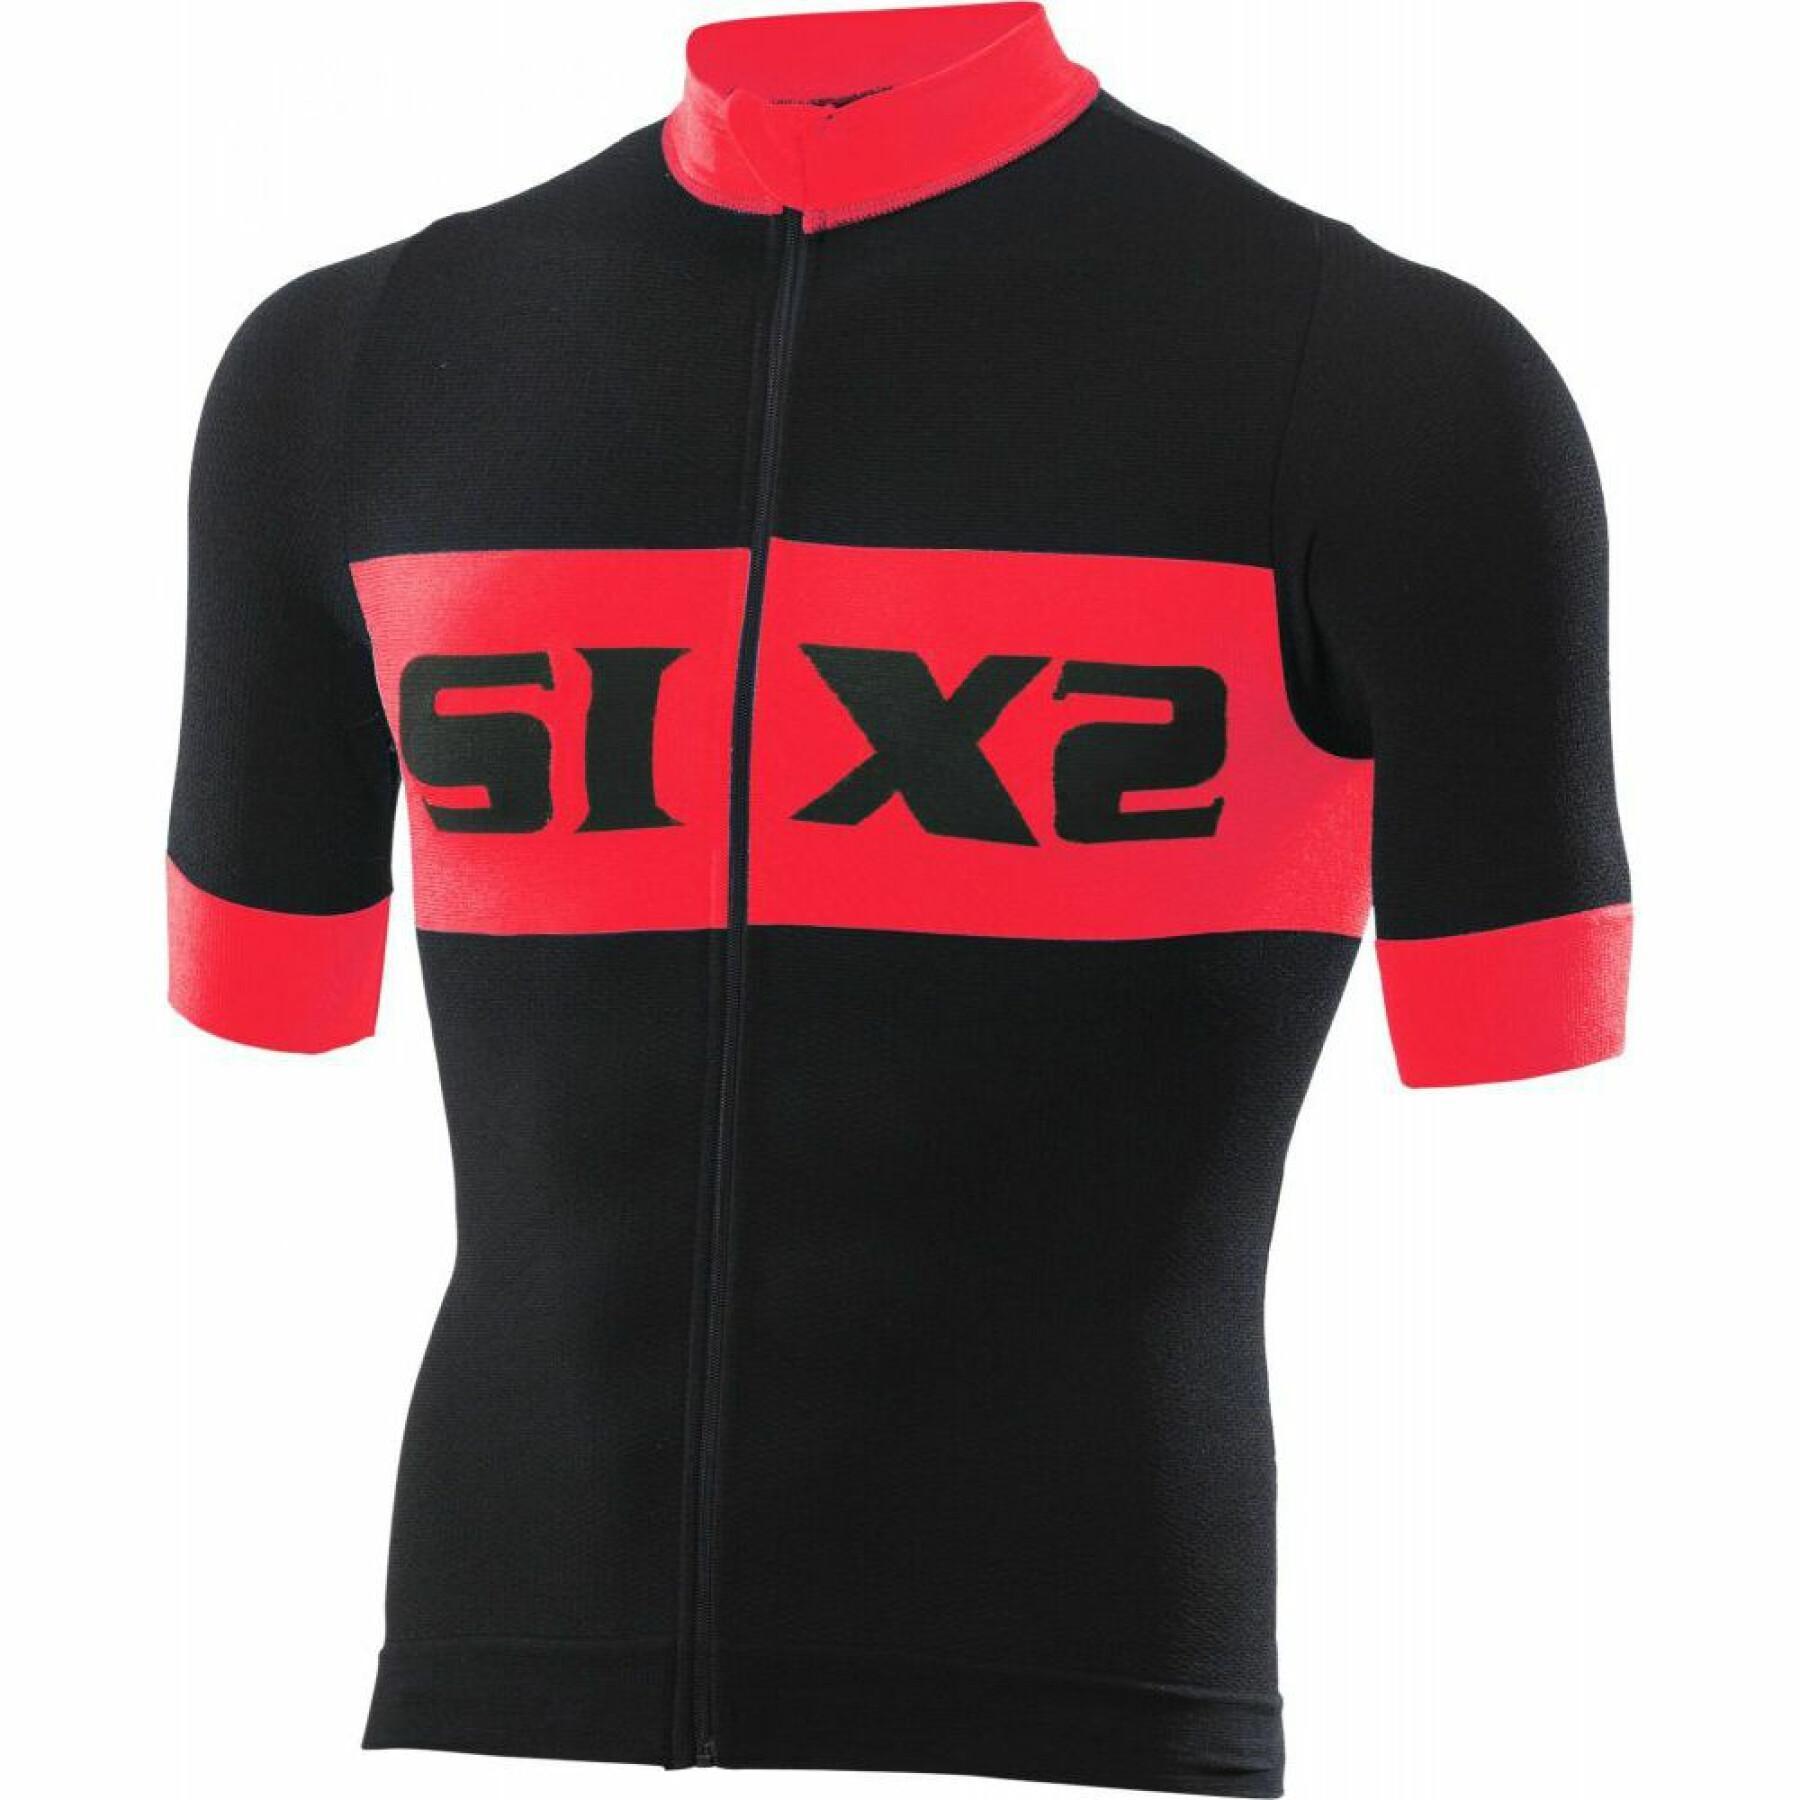 Bodysuit Sixs Bike3 Luxury